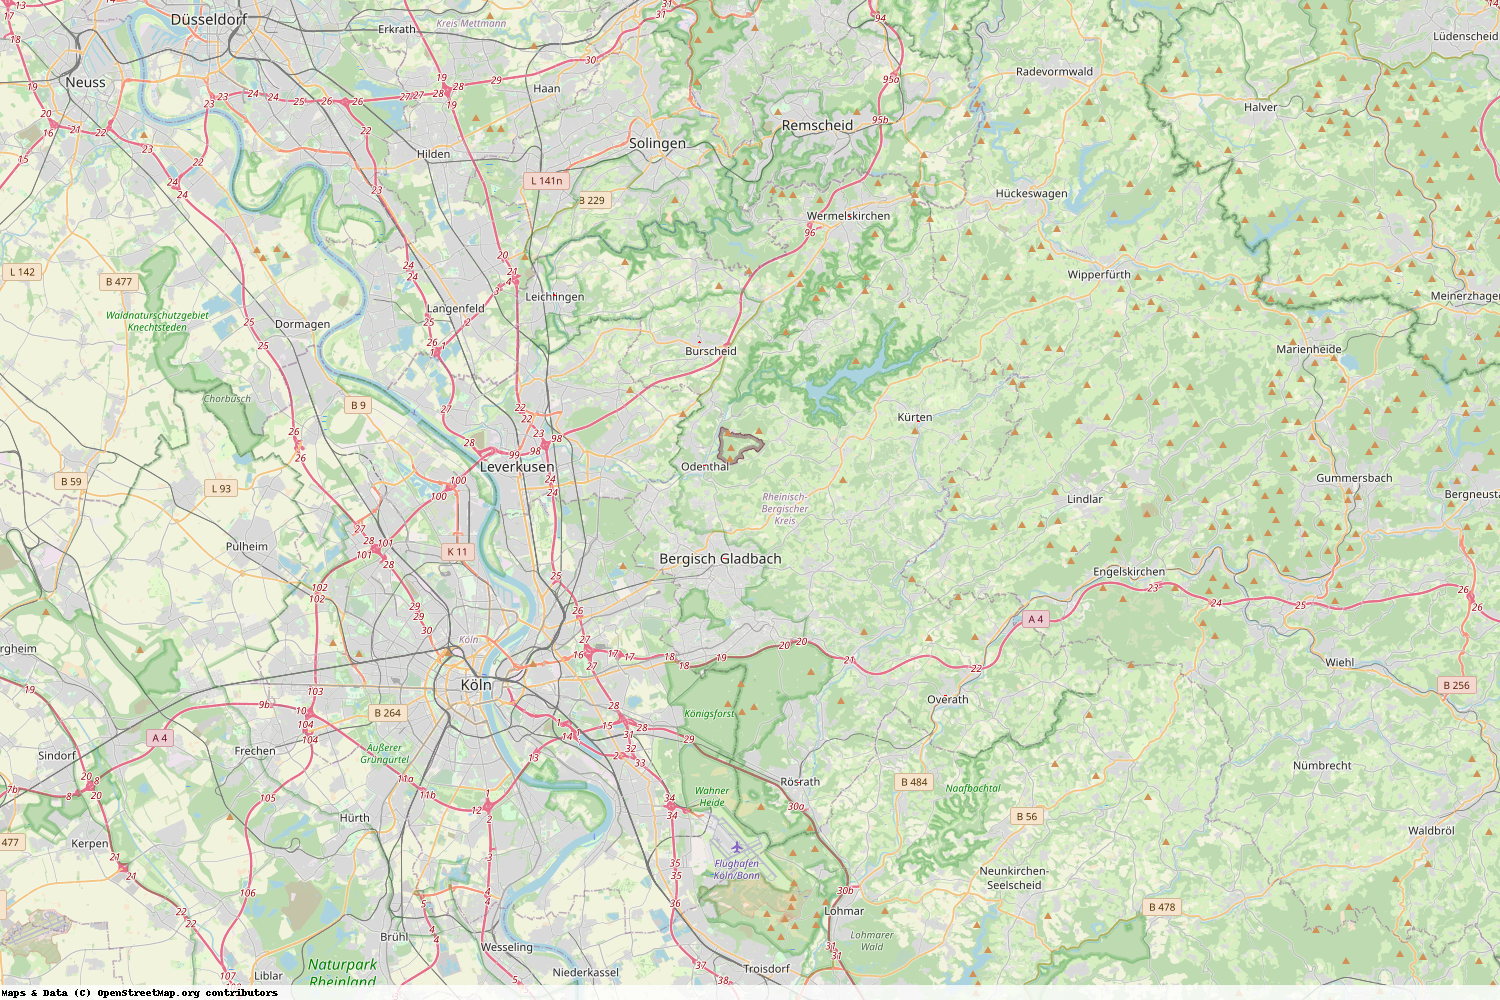 Ist gerade Stromausfall in Nordrhein-Westfalen - Rheinisch-Bergischer Kreis?